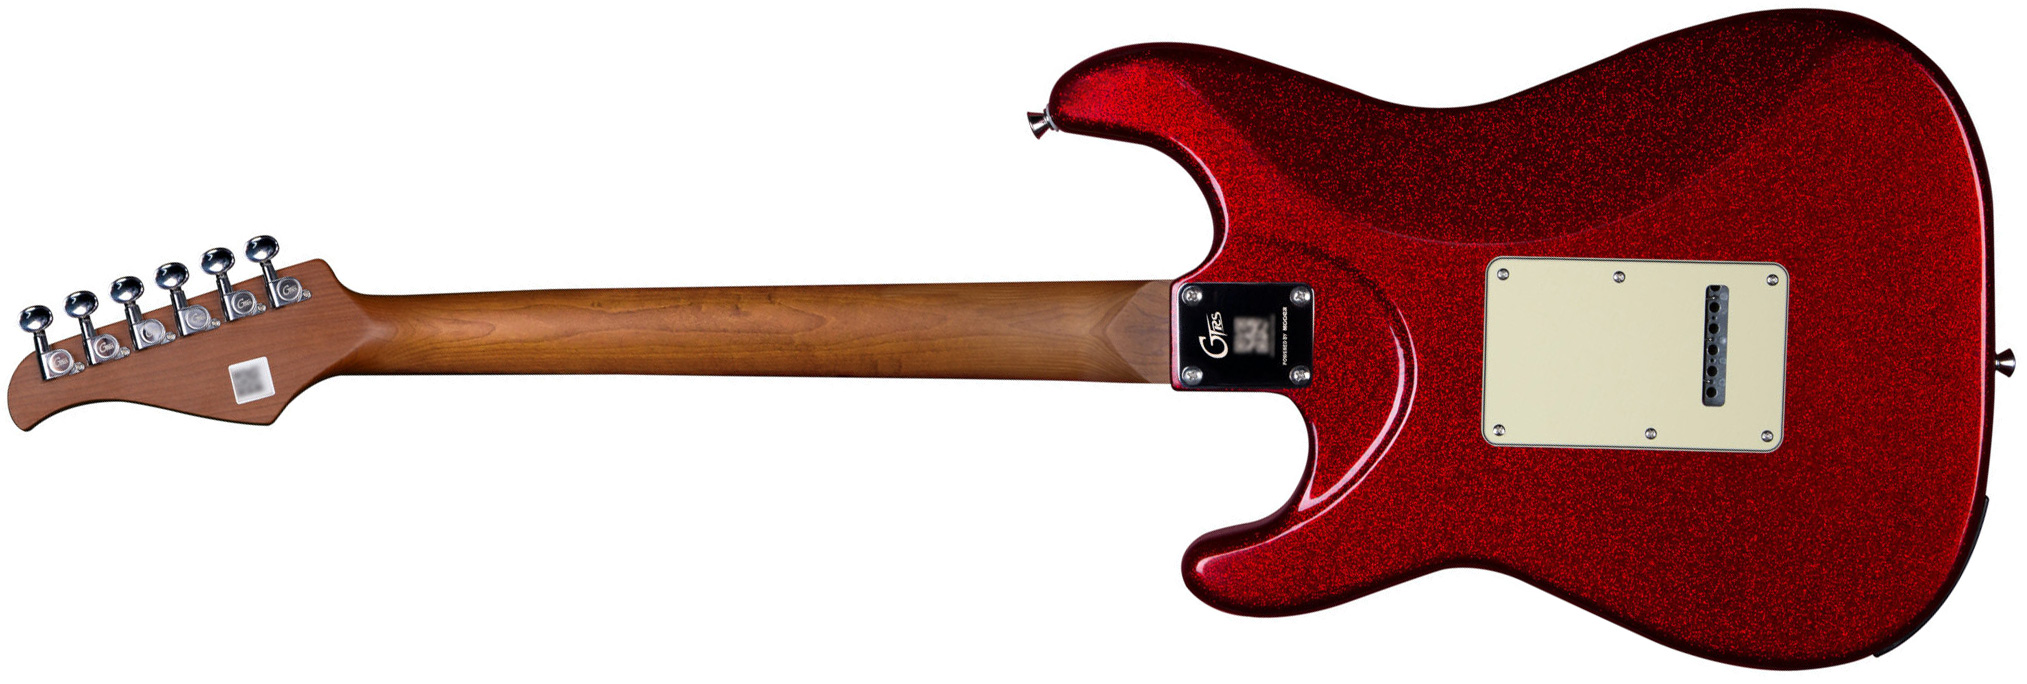 Mooer Gtrs S800 Hss Trem Rw - Metal Red - Guitare Électrique ModÉlisation & Midi - Variation 1